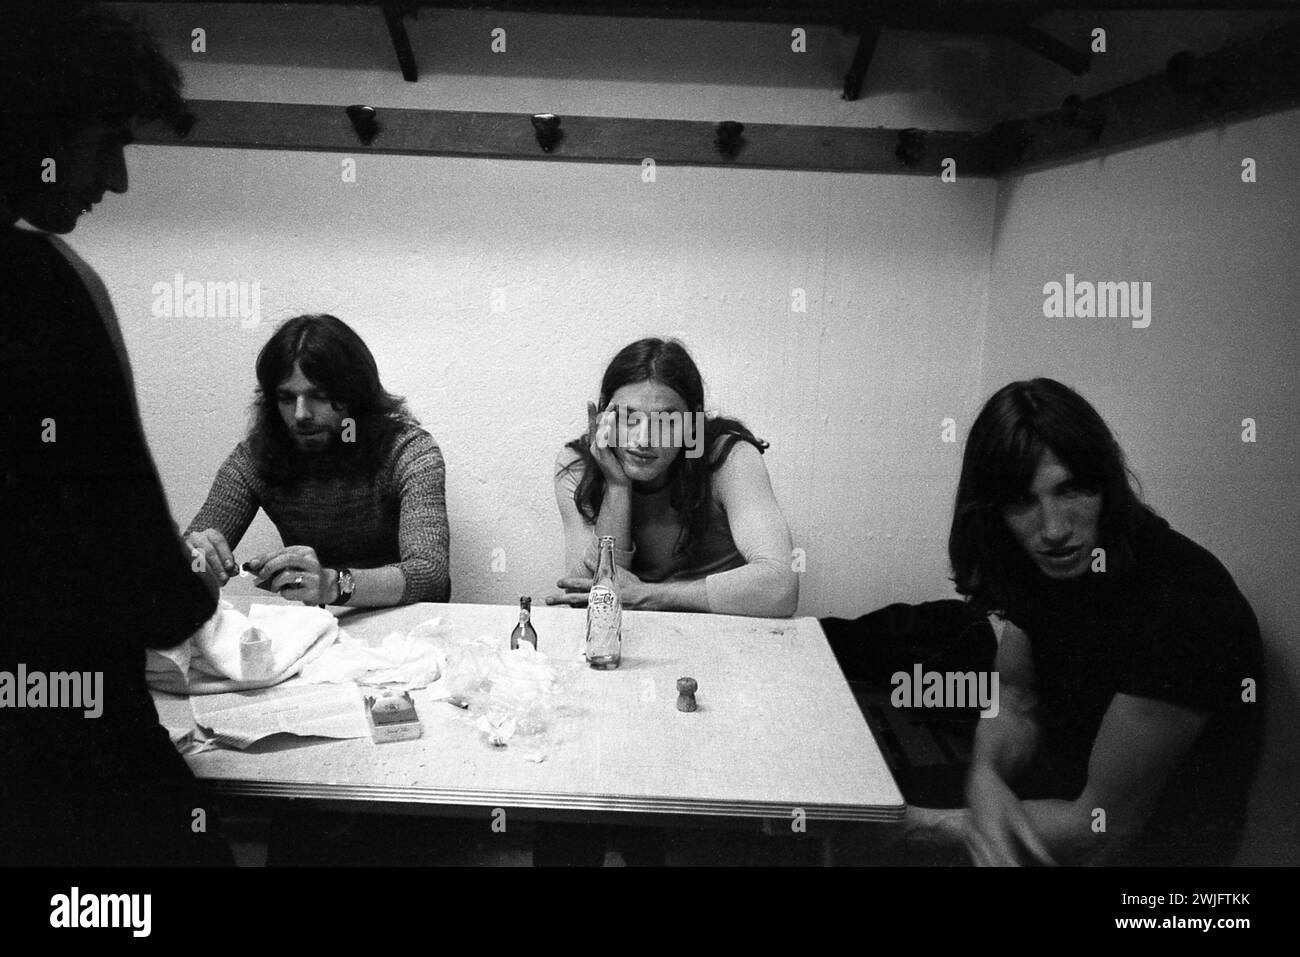 Philippe Gras / le Pictorium - Pink Floyd - 15/12/2016 - Francia / Auvergne-Rhone-Alpes / Lione - Pink Floyd backstage prima del loro concerto a Lione, 12 giugno 1971 Foto Stock